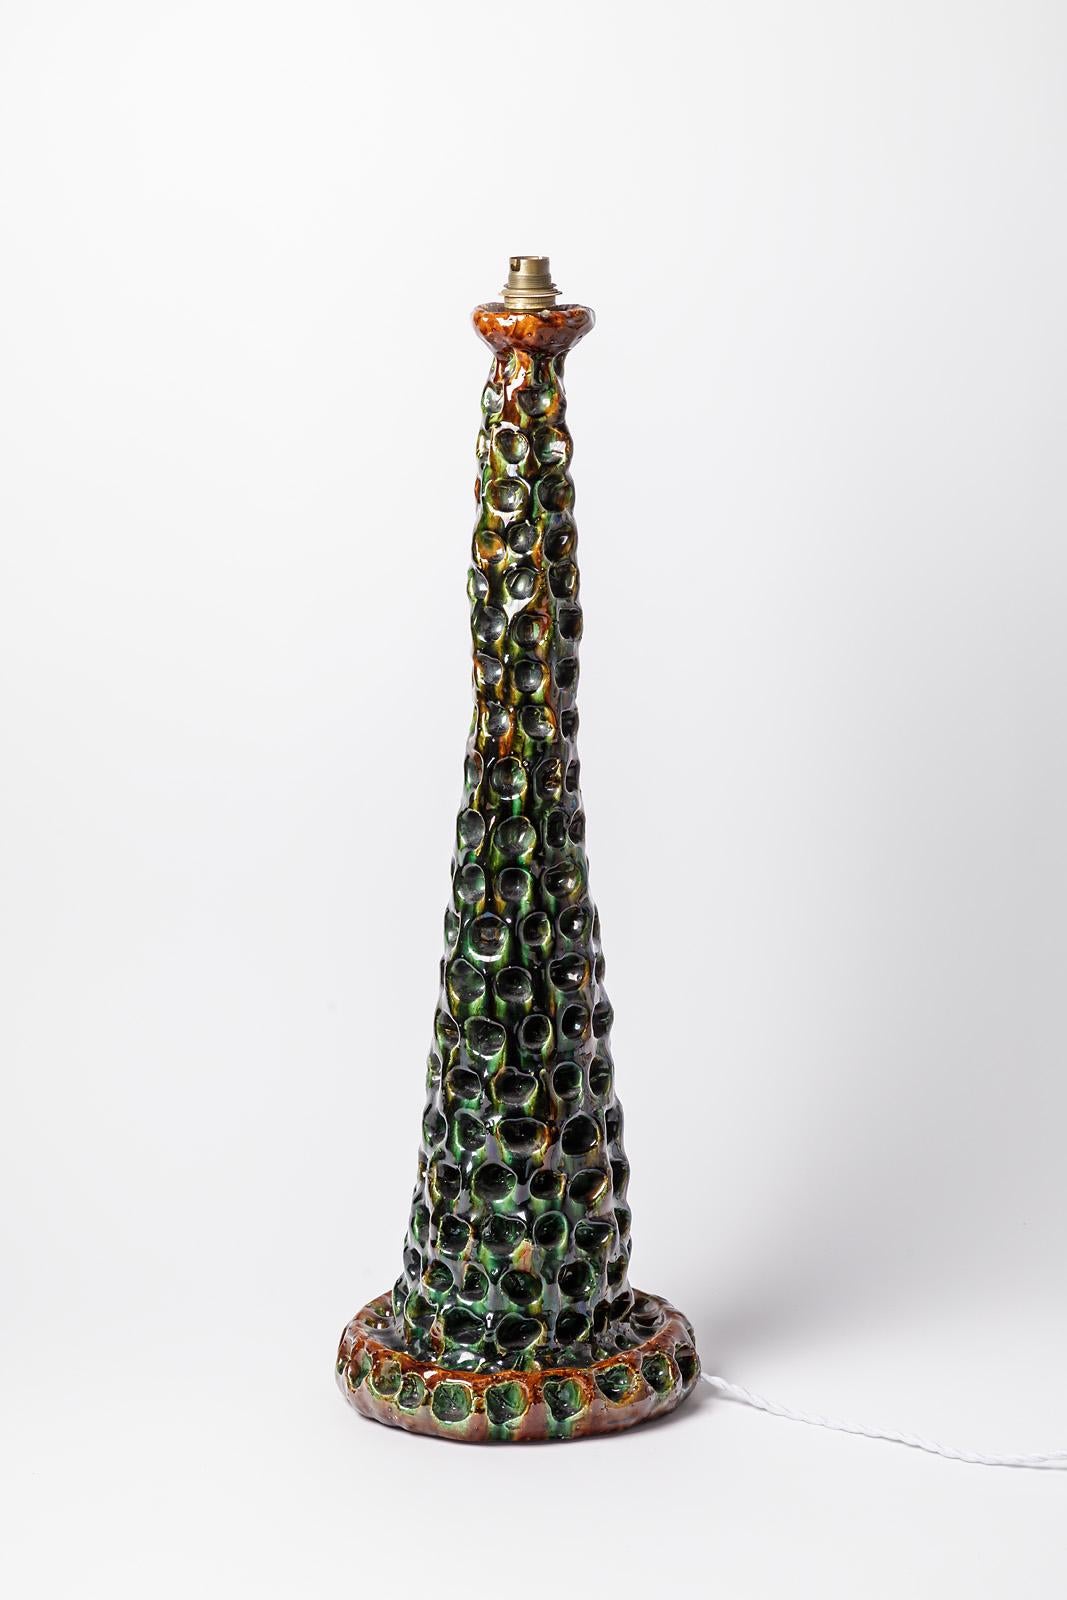 Mid-Century Modern Grande lampe de table en céramique colorée du XXe siècle par Gerlou 1950, pièce unique 68 cm en vente